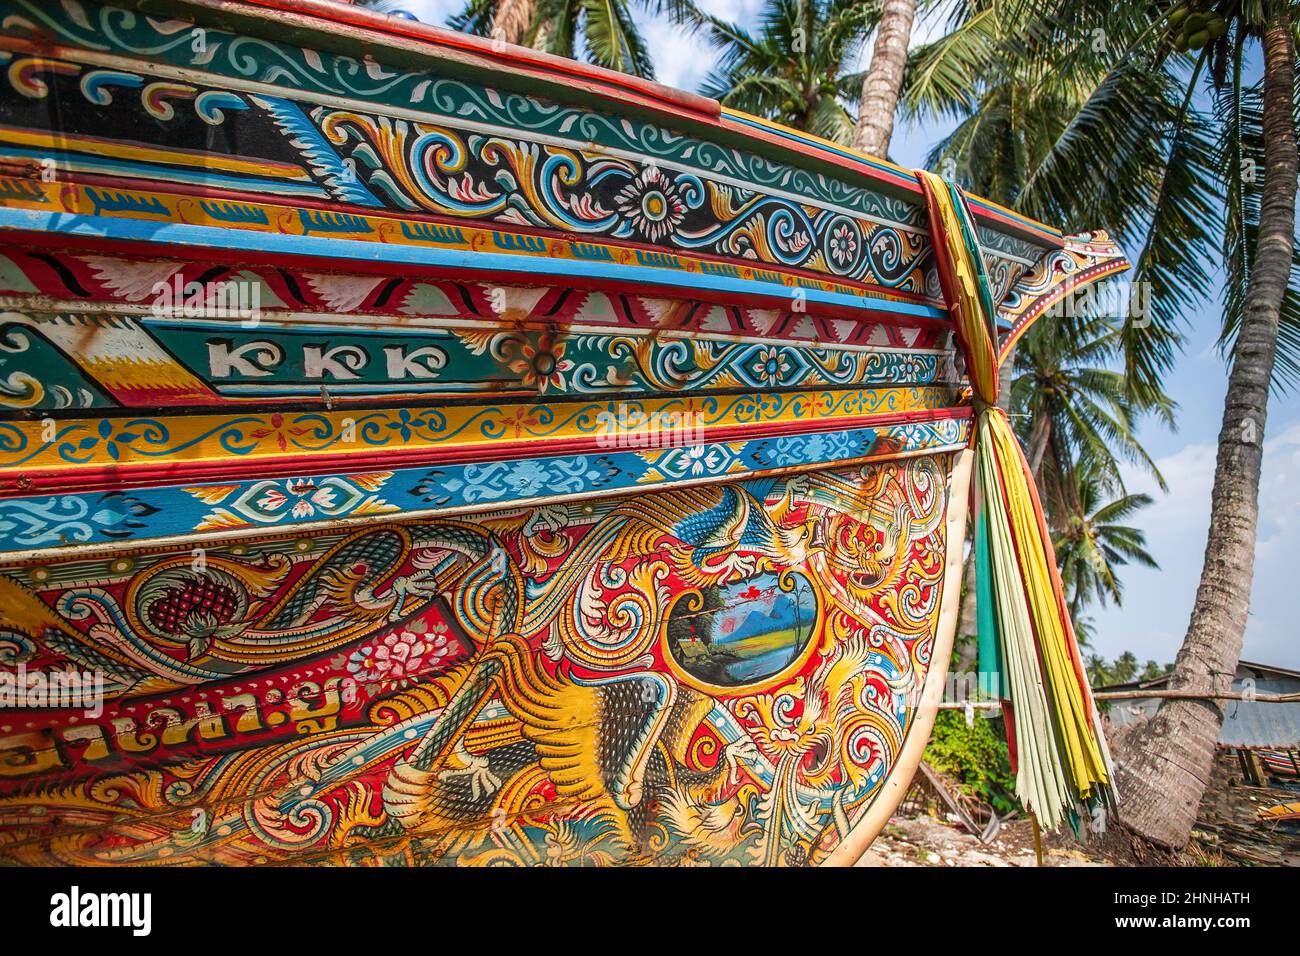 Elegante Wandmalerei und farbige Stoffaufhänge auf dem Kolae-Boot, einem traditionellen Thai-Malayu-Fischerboot. Pattani, Thailand. Stockfoto